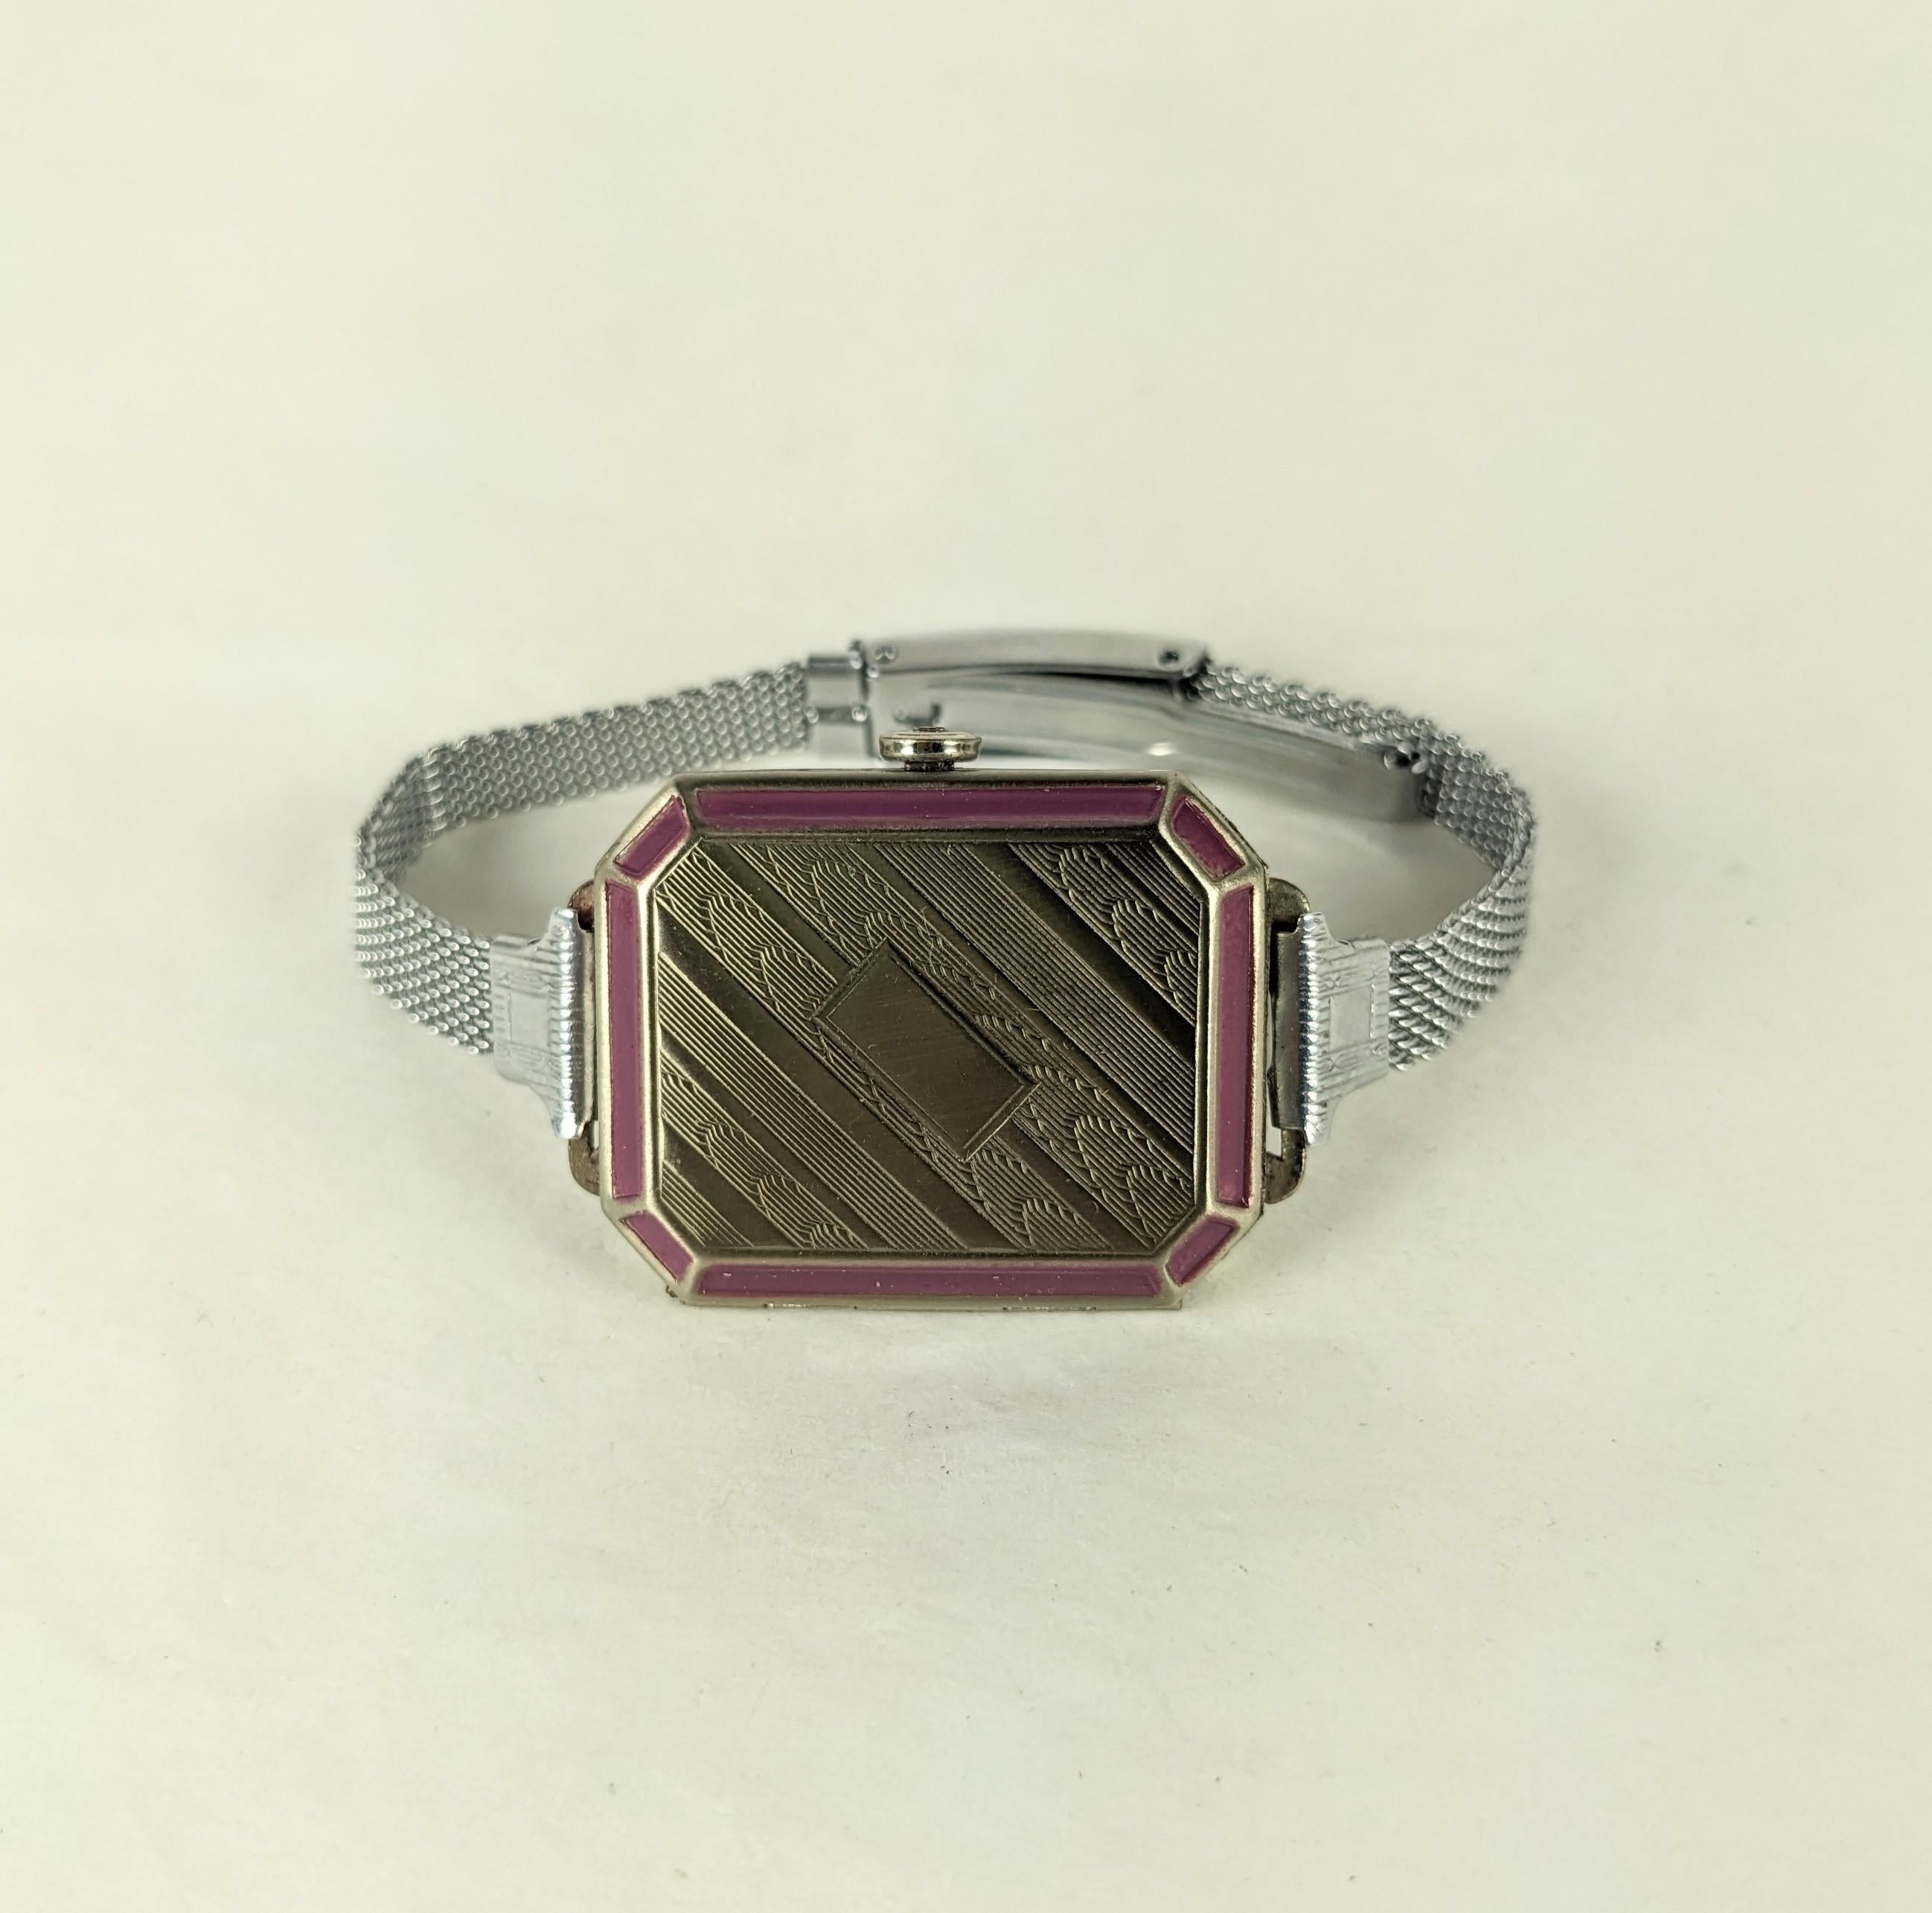 Art Deco Faux Watch Compact aus den 1920er Jahren. Sie sieht aus wie eine Uhr aus Chrom mit Emaille-Akzenten. Er lässt sich öffnen und gibt den Blick auf die beiden Fächer für Puder und Rouge frei. Gezeichnet 